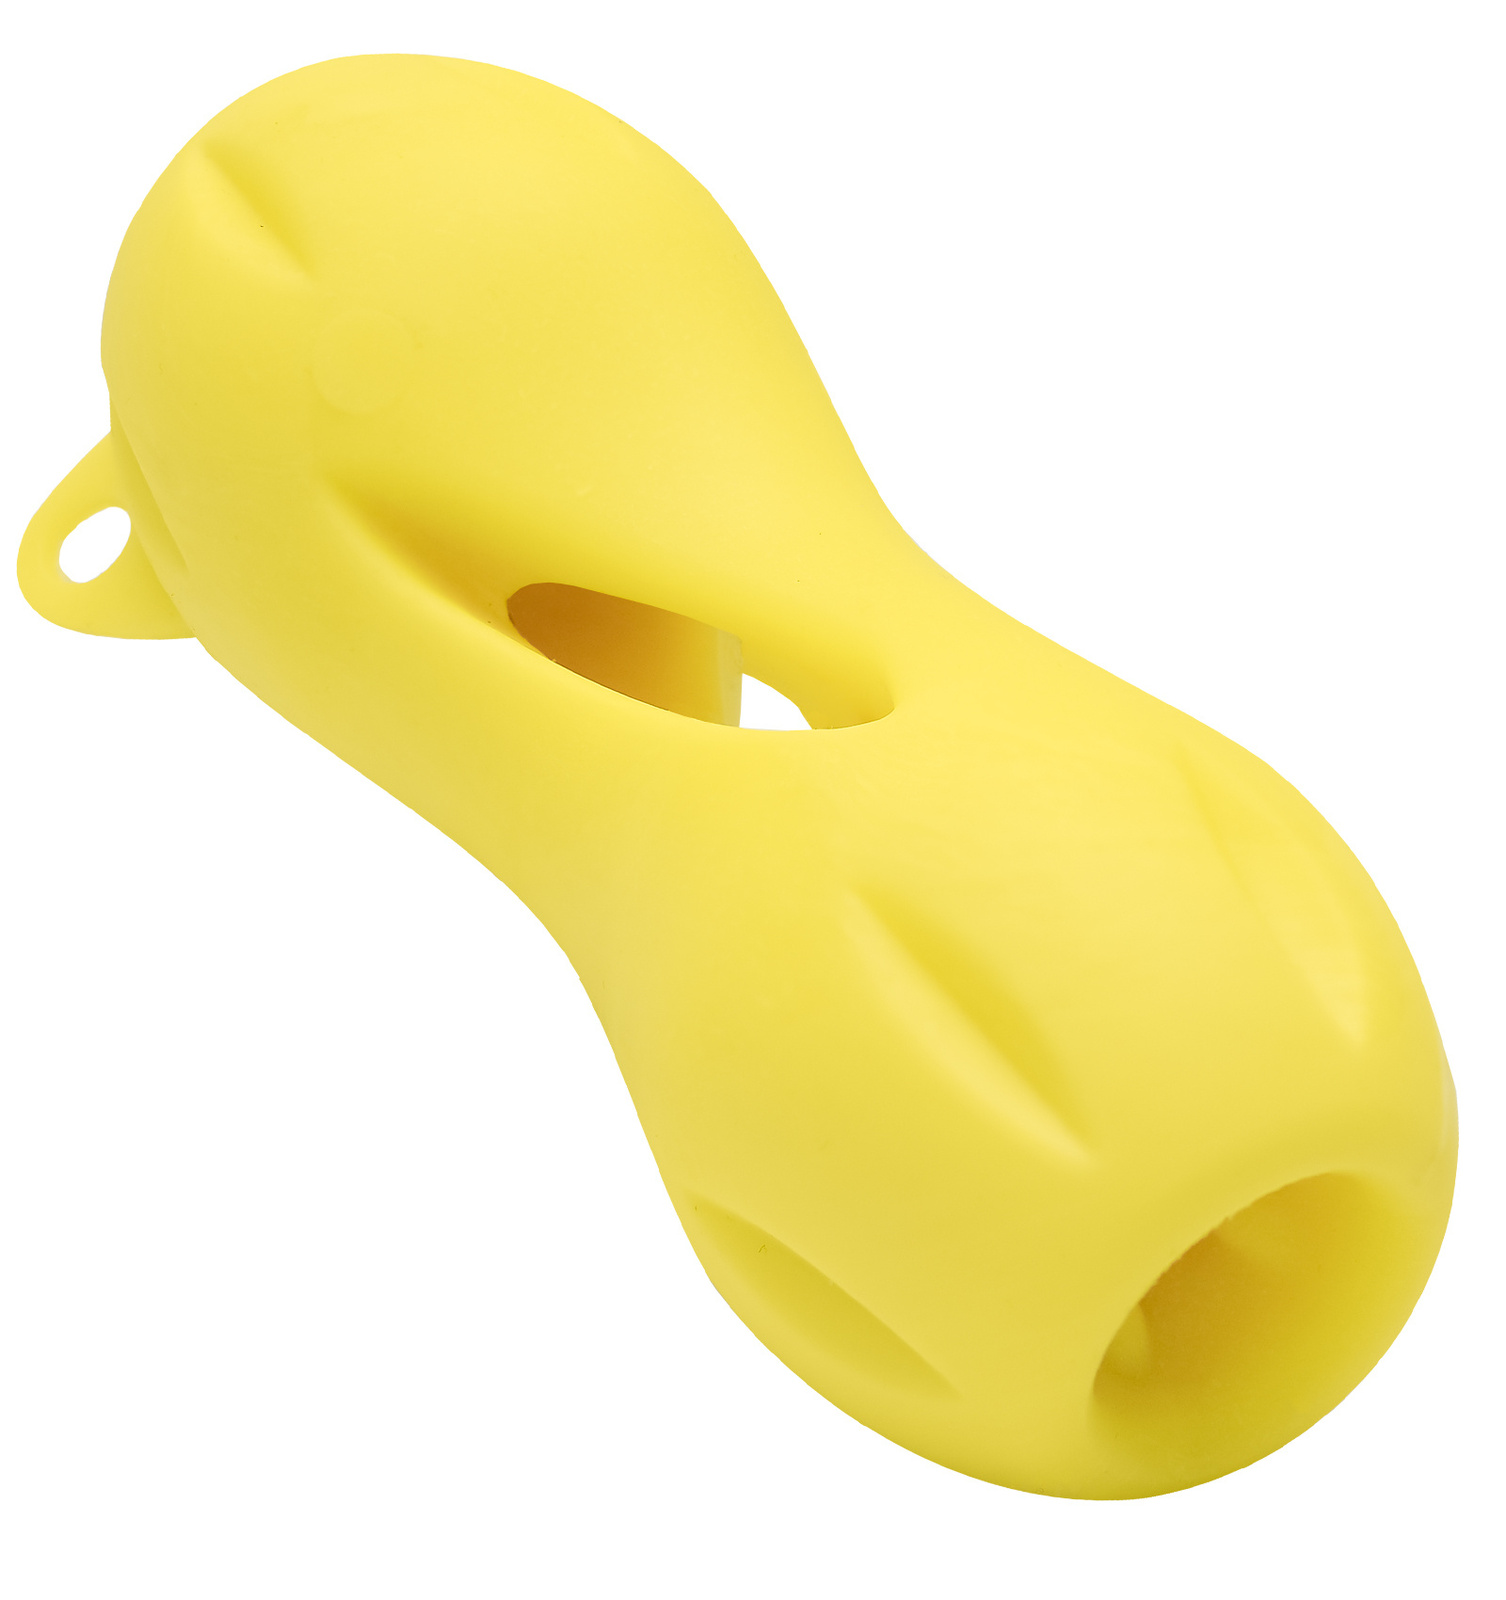 PETSHOP игрушки PETSHOP игрушки игрушка для собак Кость резиновая для лакомств, желтая (13х5,5 см)